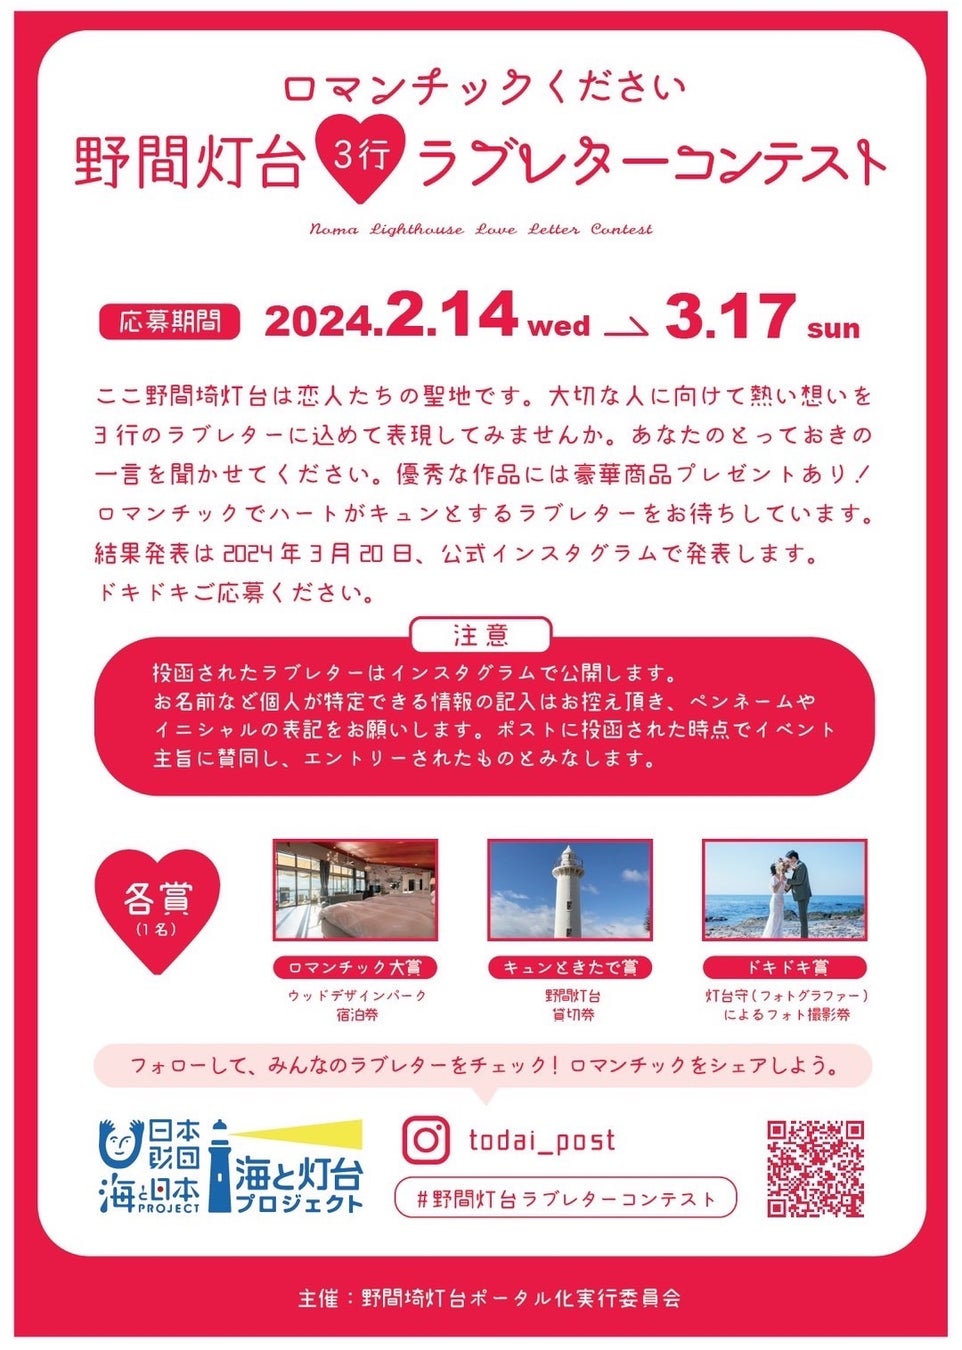 【新商品】自転車パーツブランド「GORIX」から、ショートサドル(GX-SA710) が新発売!!